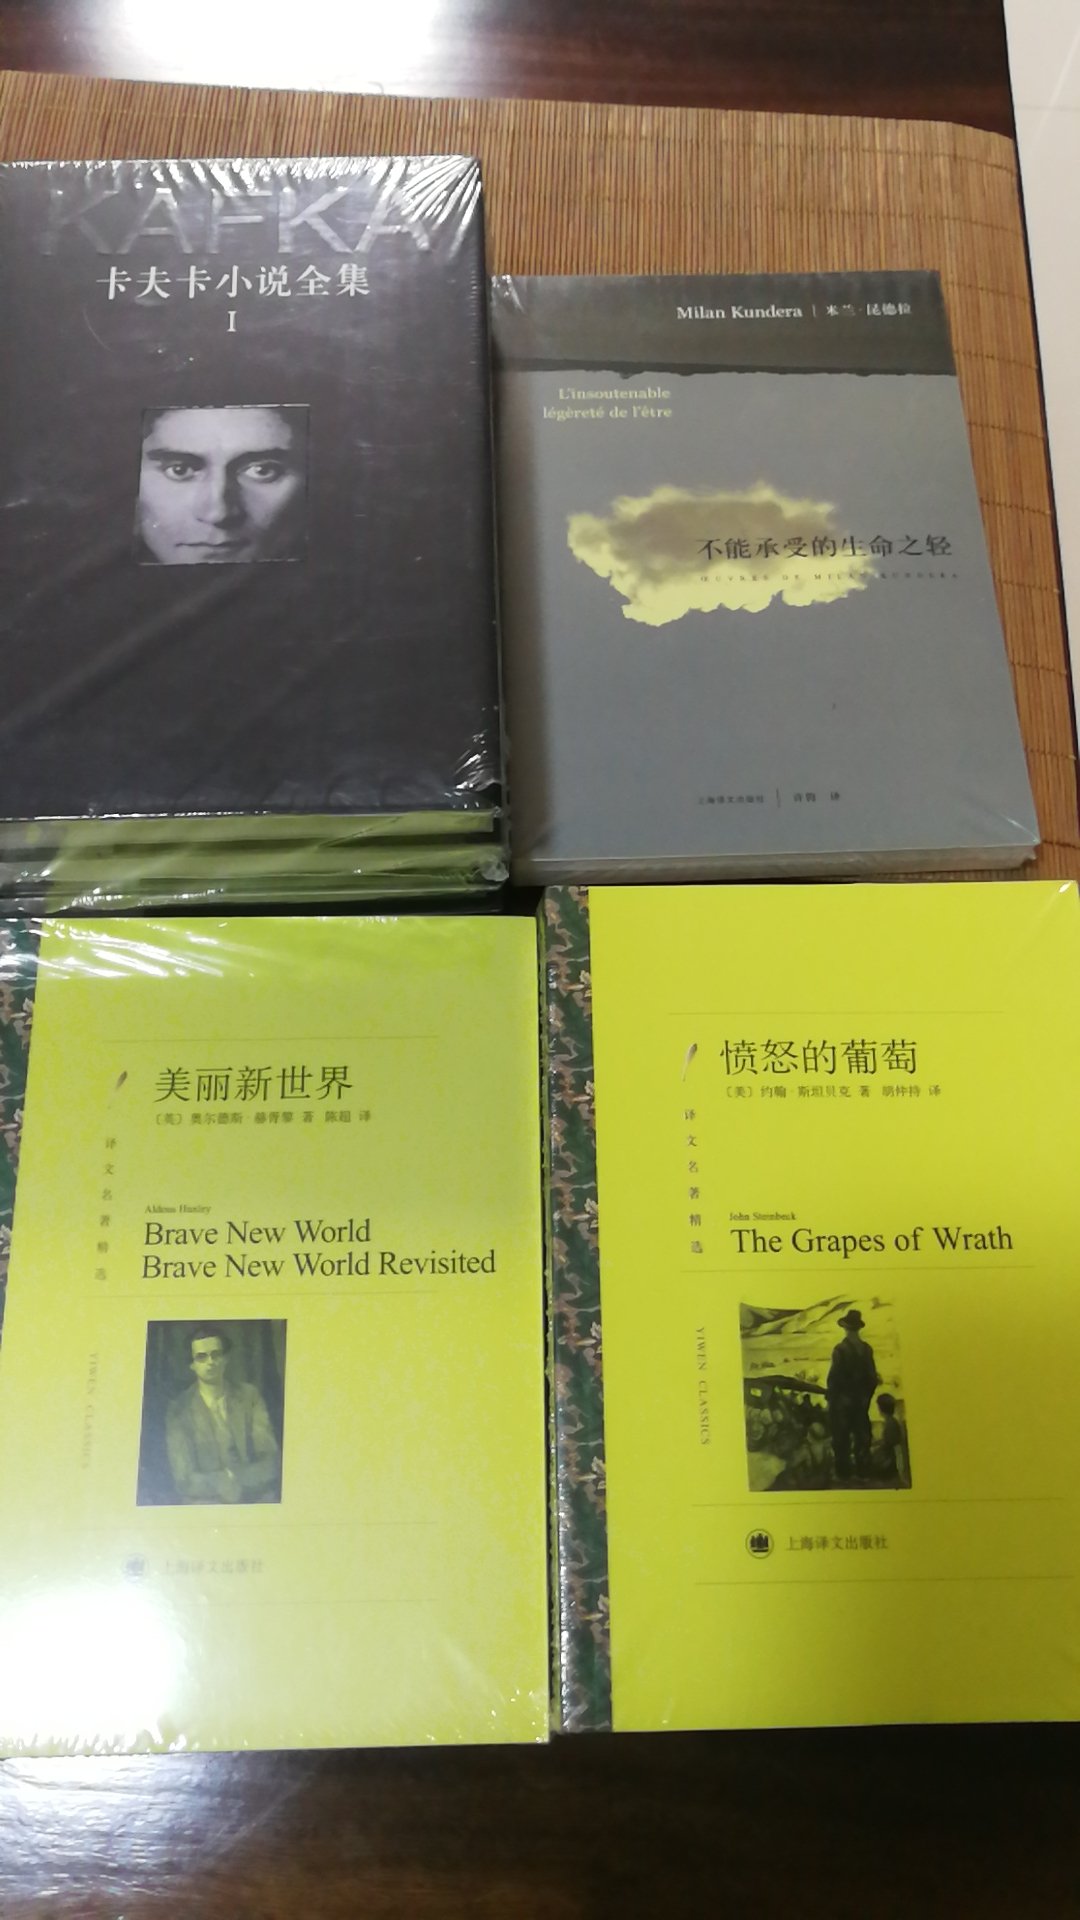 书收到了，有塑封，干净整洁。上海译文出版社，纸质很好，看完可以收藏。好评。